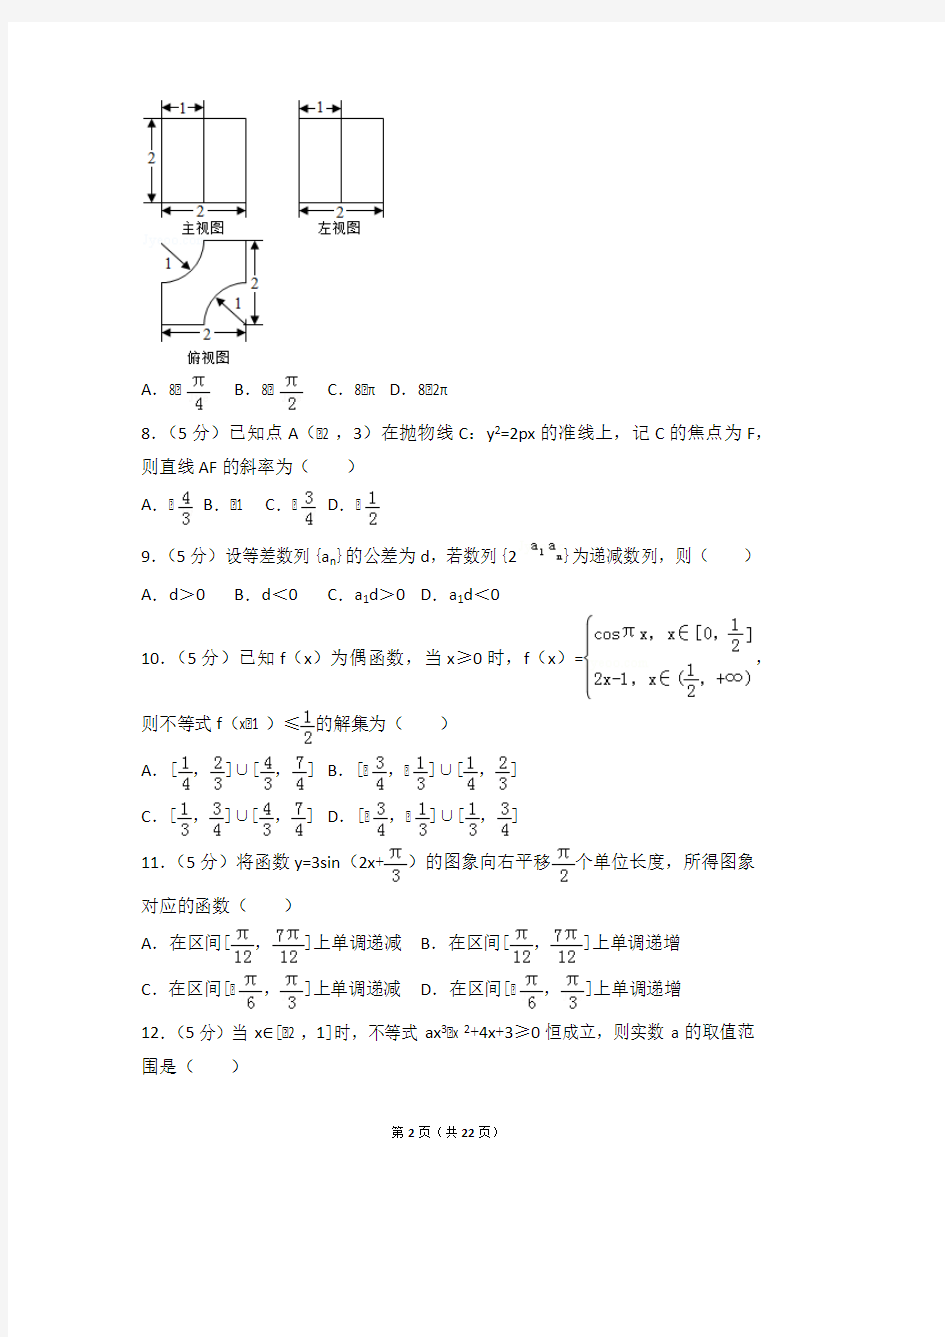 2014年辽宁省高考数学试卷文科